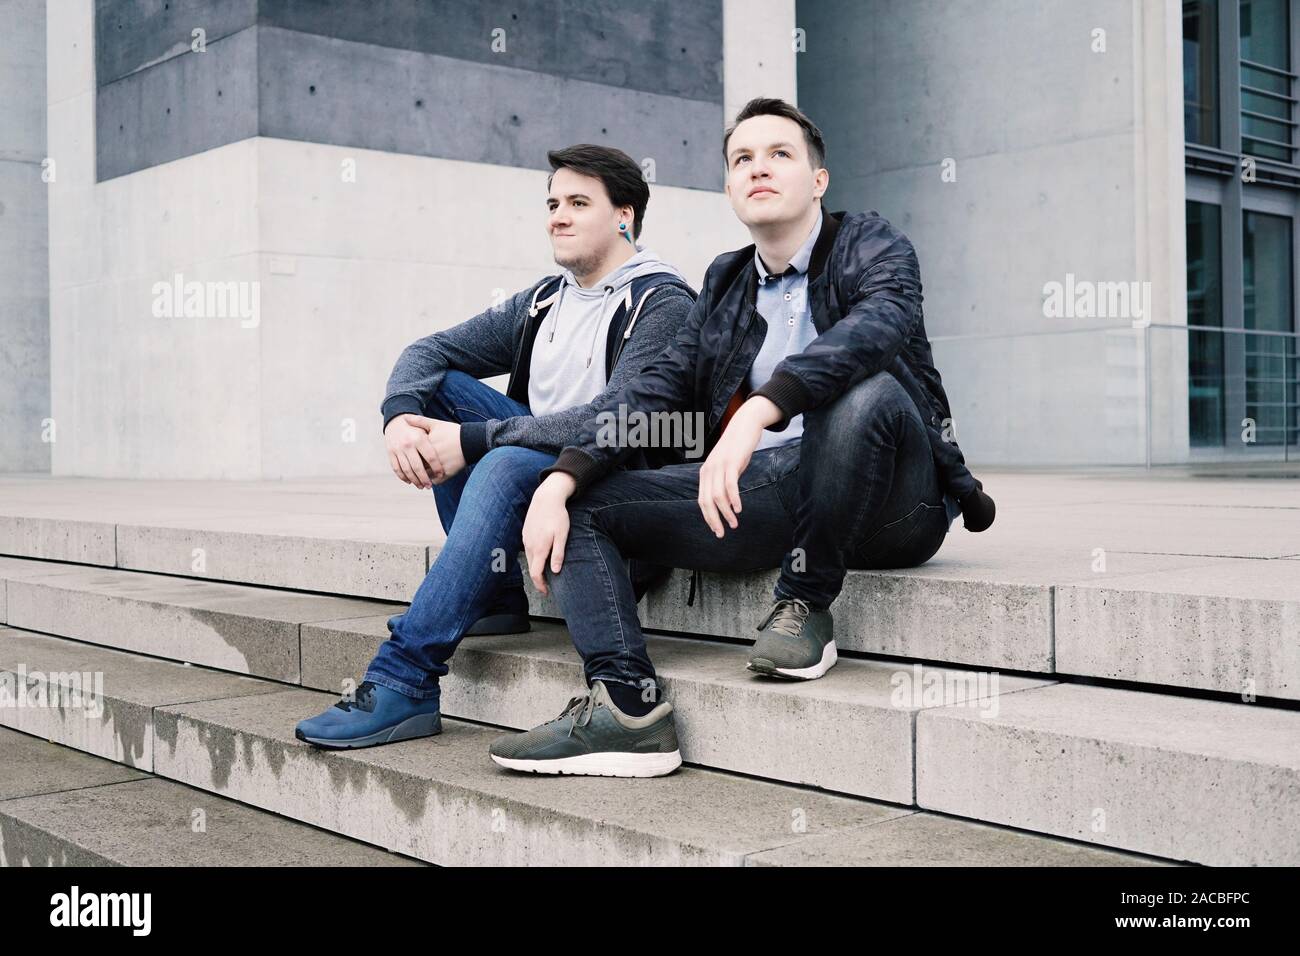 Zwei männliche Teenager Freunde oder Brüder zwei männliche Teenager Freunde sitzen auf konkrete Schritte oder Treppenhaus außerhalb - städtische Jugend lifestyle Stockfoto